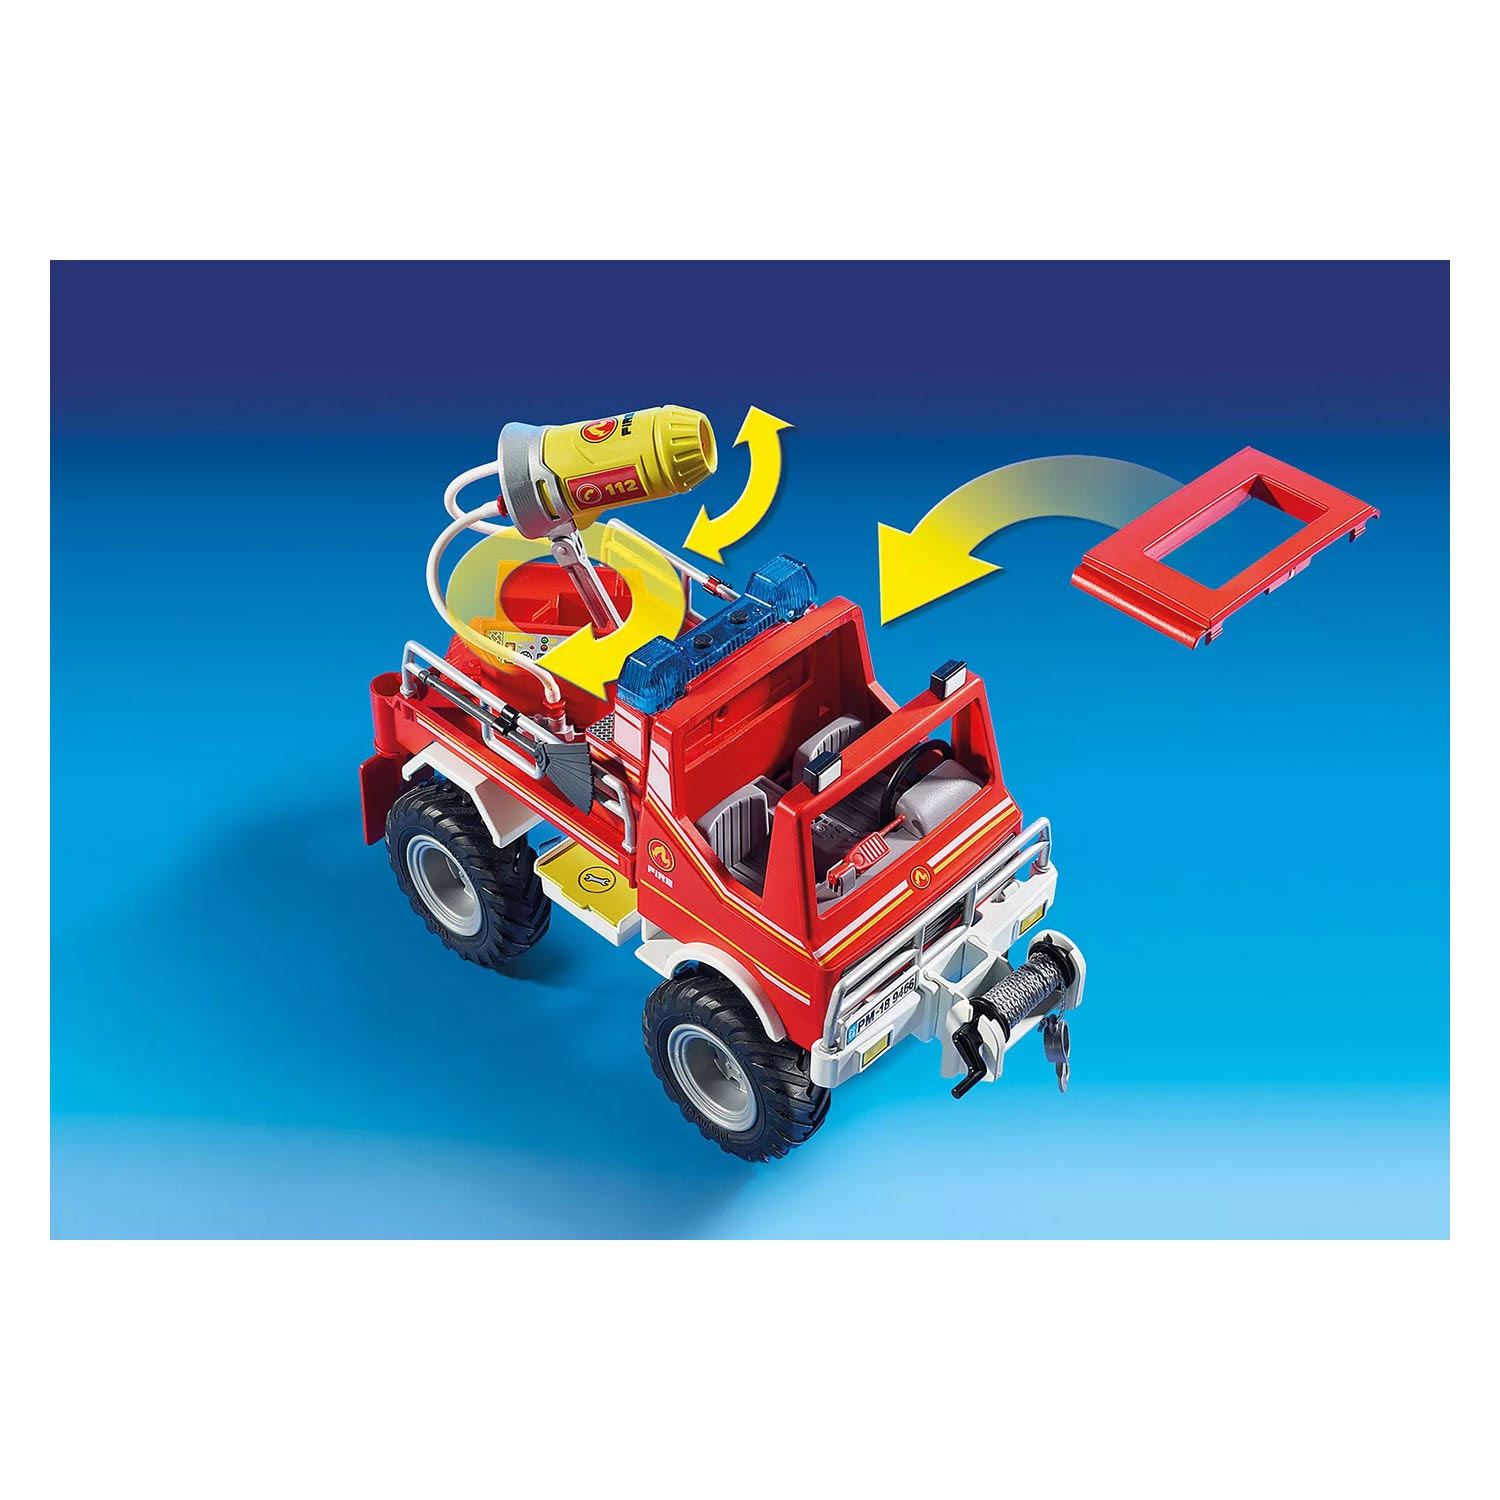 Playmobil City Action Brandweer Terreinwagen met Waterkanon - 9466